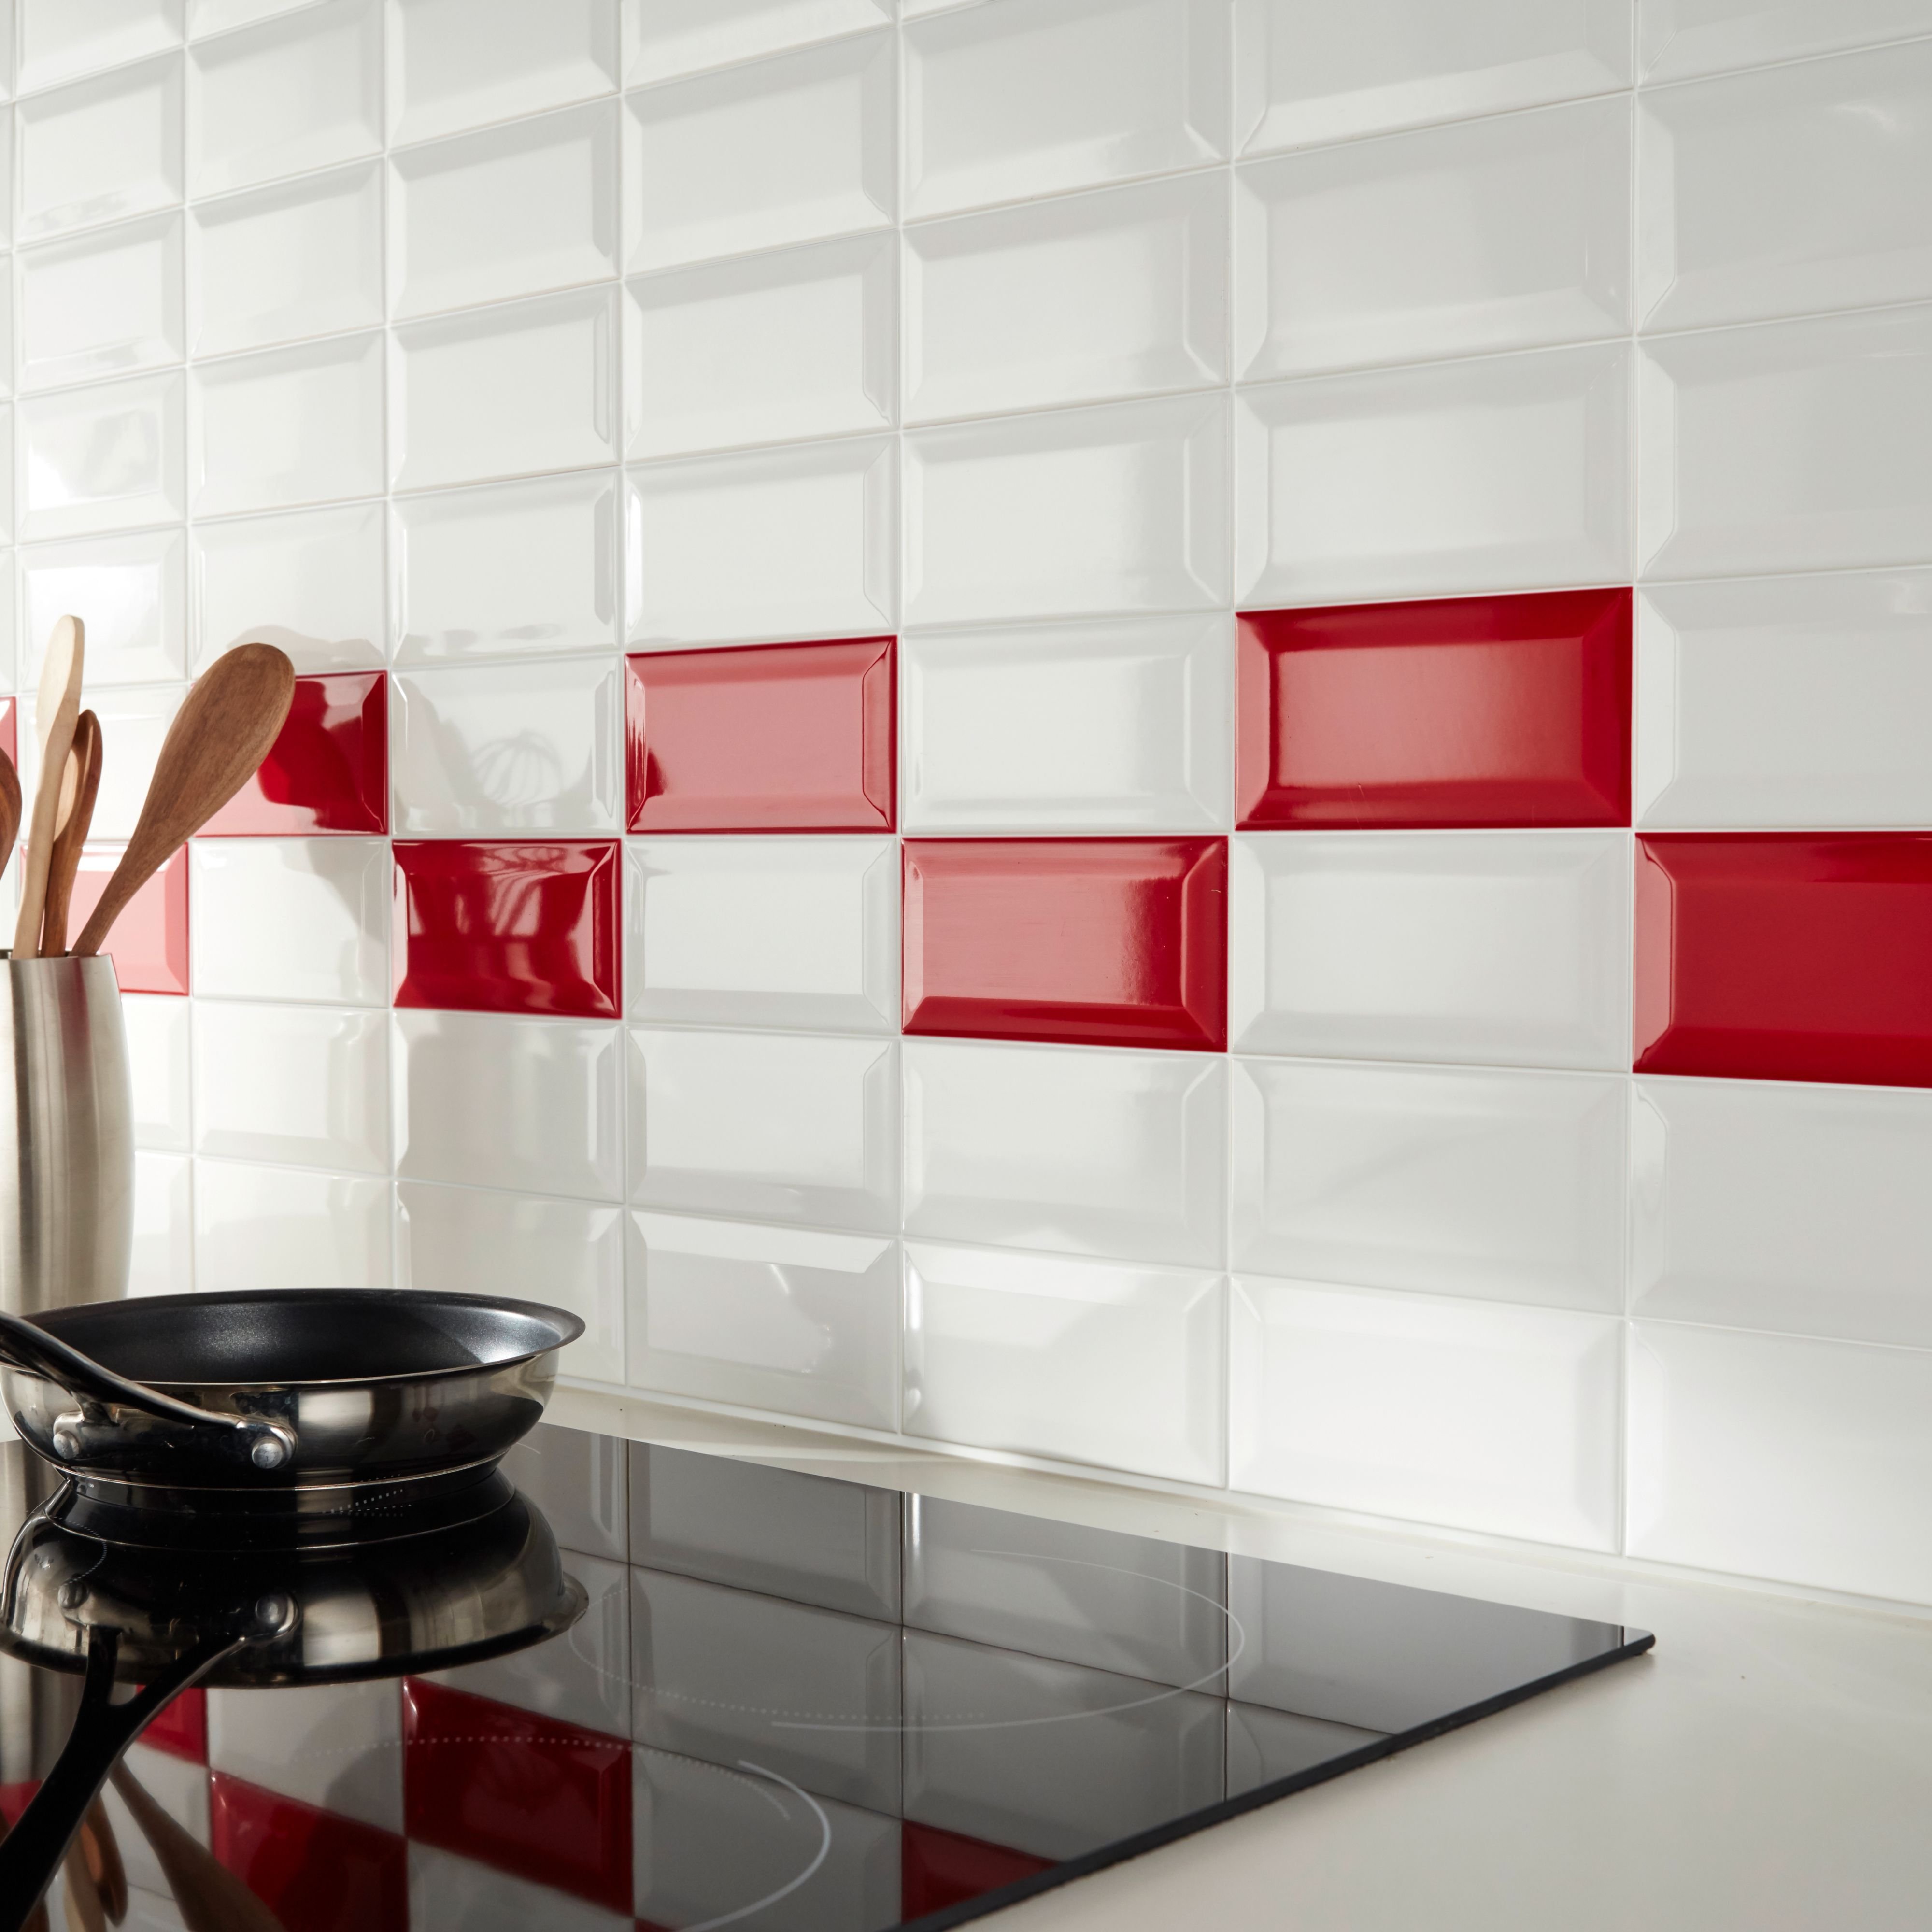 фото дизайн укладки плитки на кухне